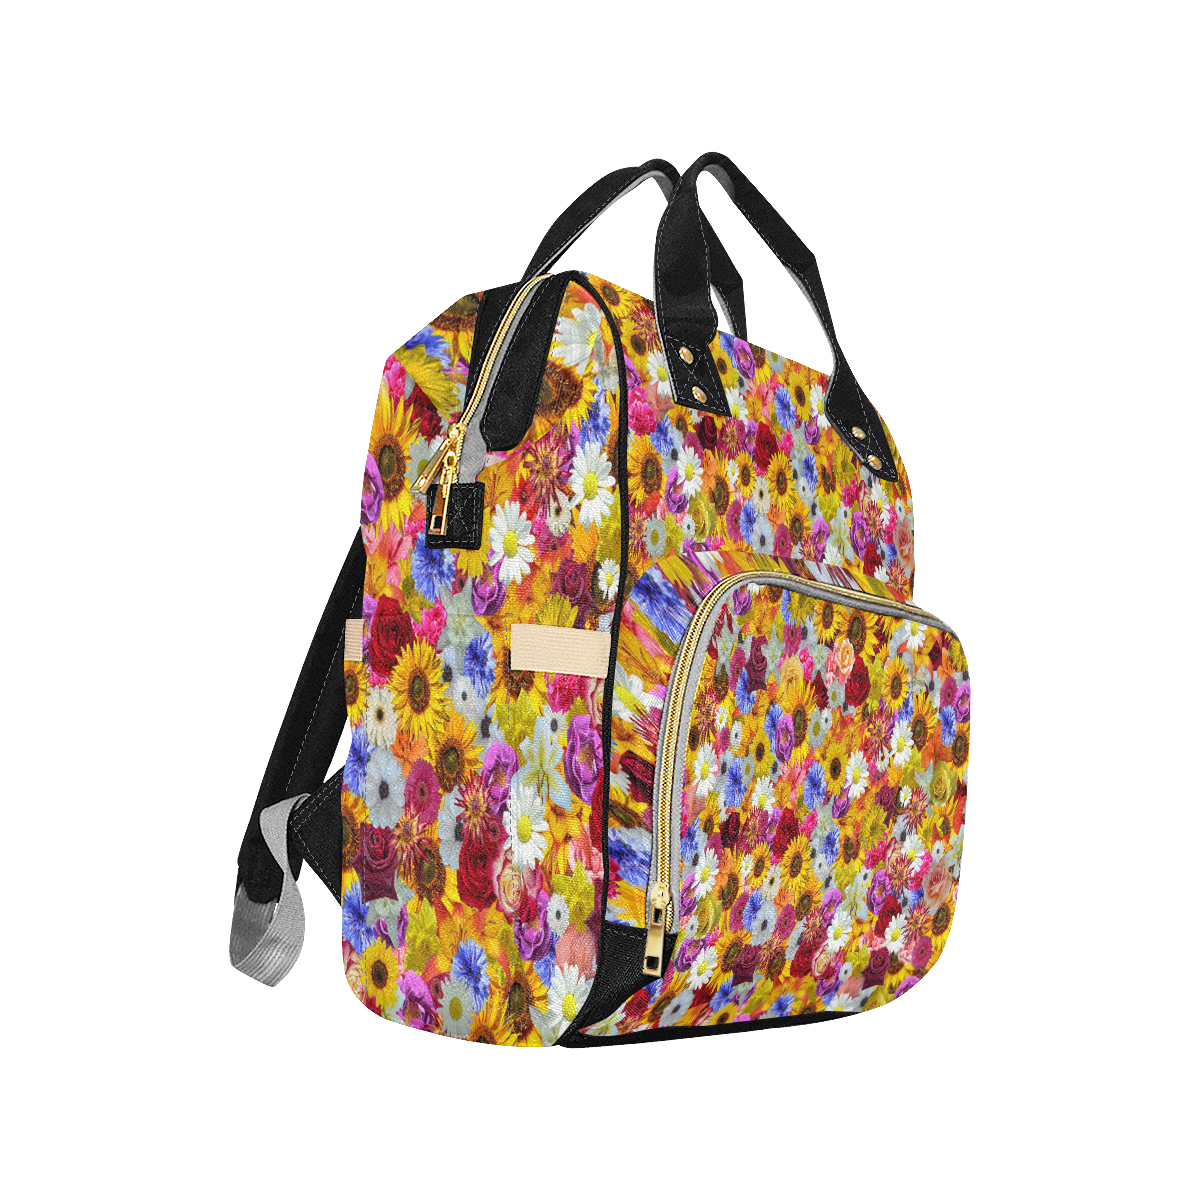 Bright Spring Fantasy Garden Multi-Function Diaper Backpack/Diaper Bag (Model 1688)